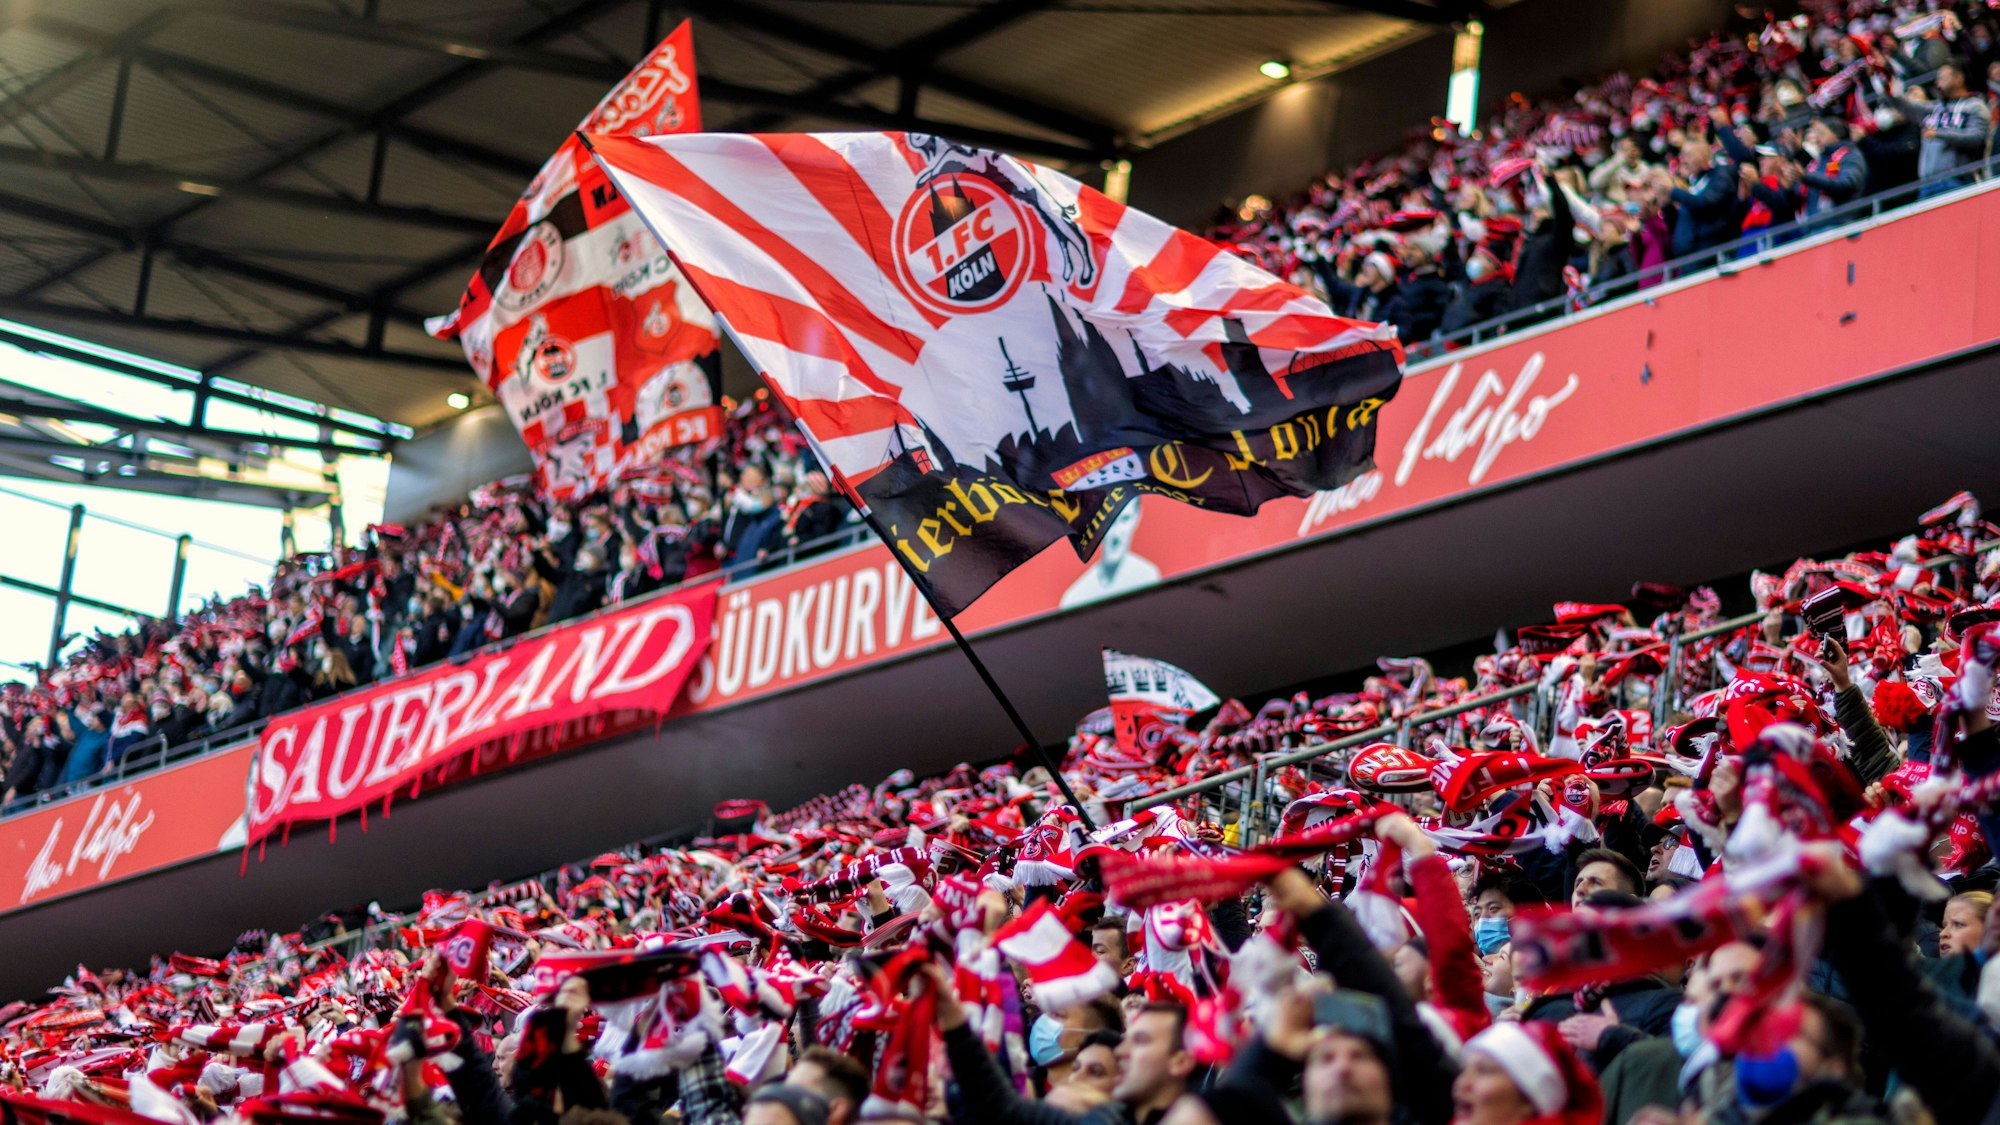 50.000 Fans besuchen das Bundesliga-Spiel 1. FC Köln gegen Borussia Mönchengladbach.